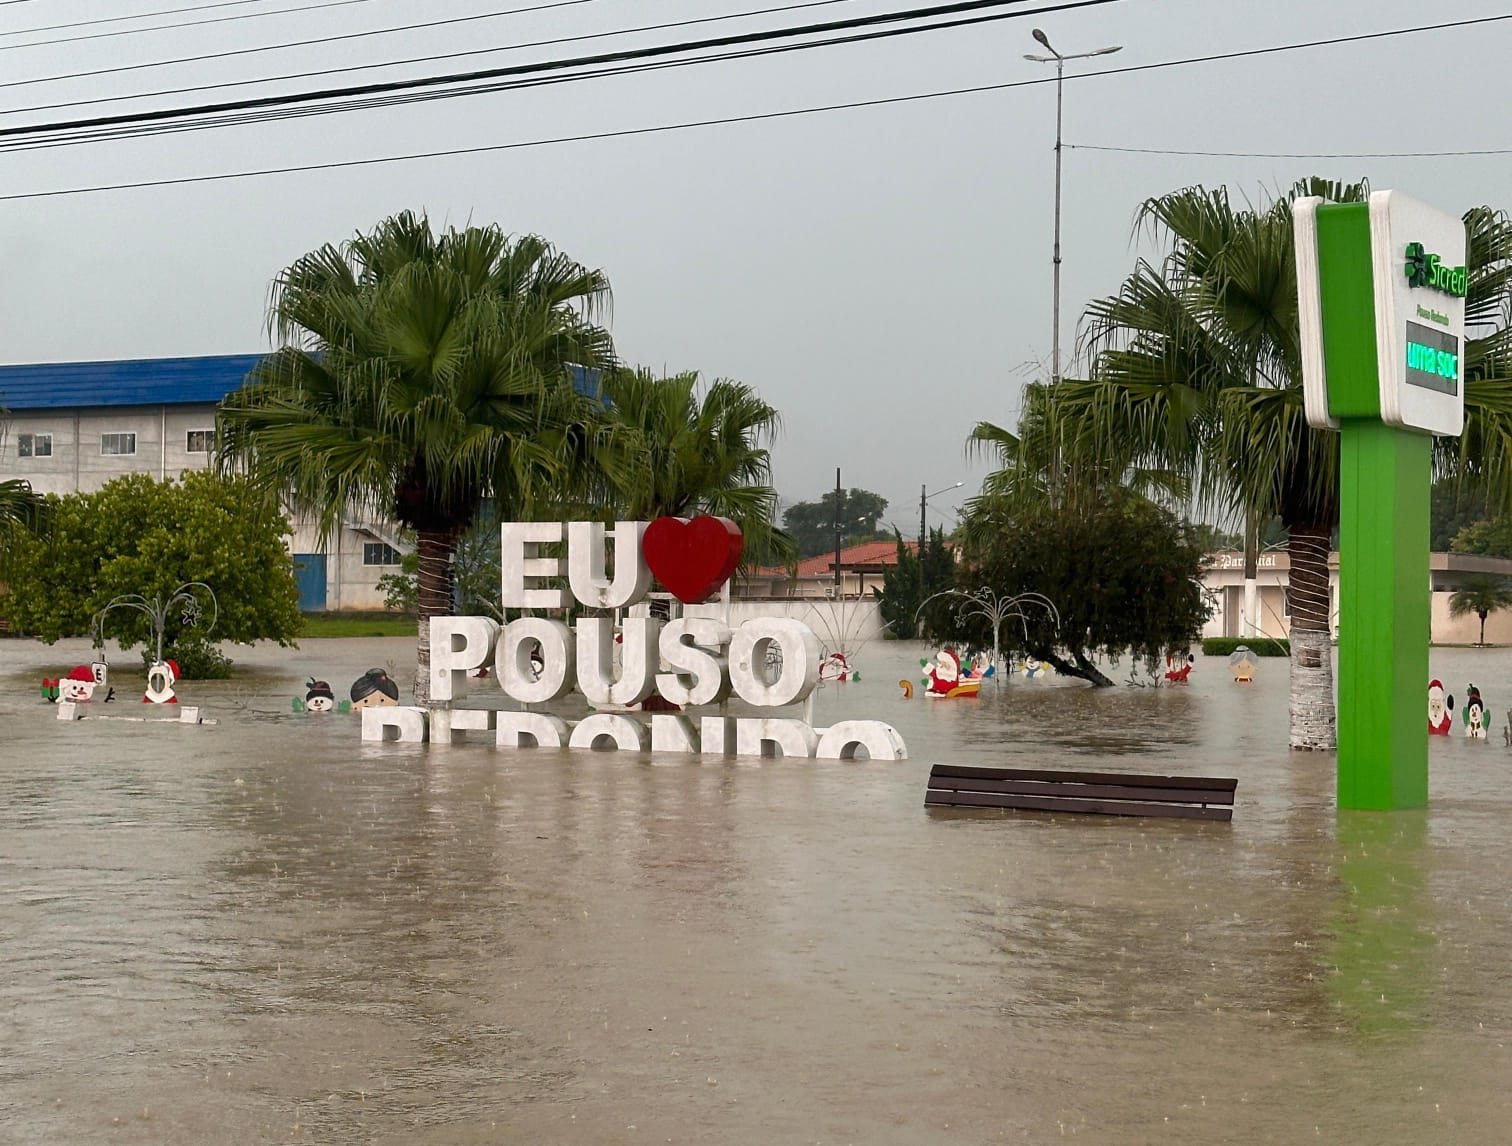 Moradores atingidos por enchente em Pouso Redondo podem procurar itens de ajuda humanitária para sua família